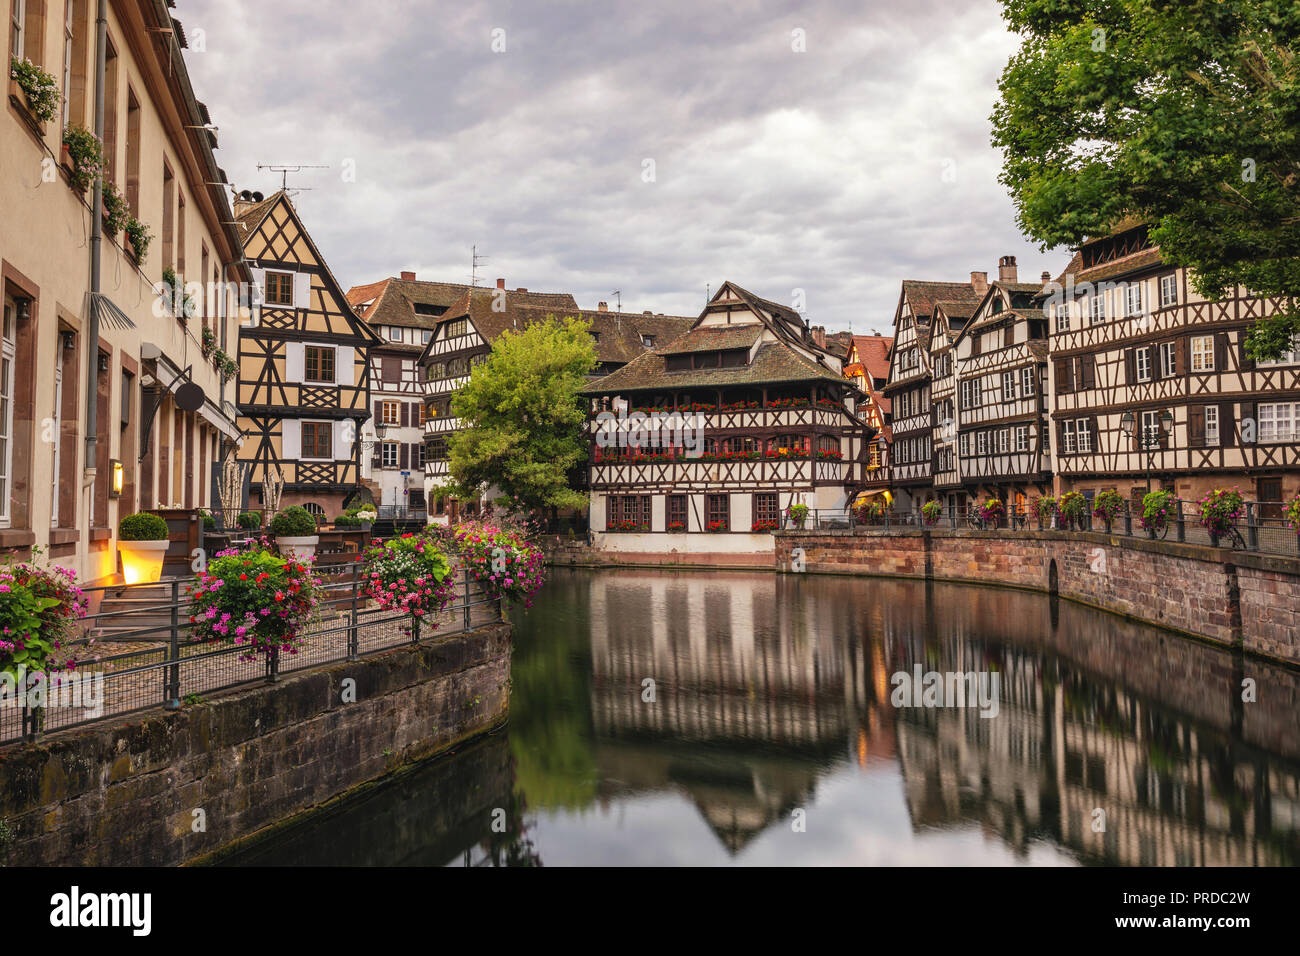 Estrasburgo, Francia, coloridas casas de madera la mitad del horizonte de la ciudad Foto de stock